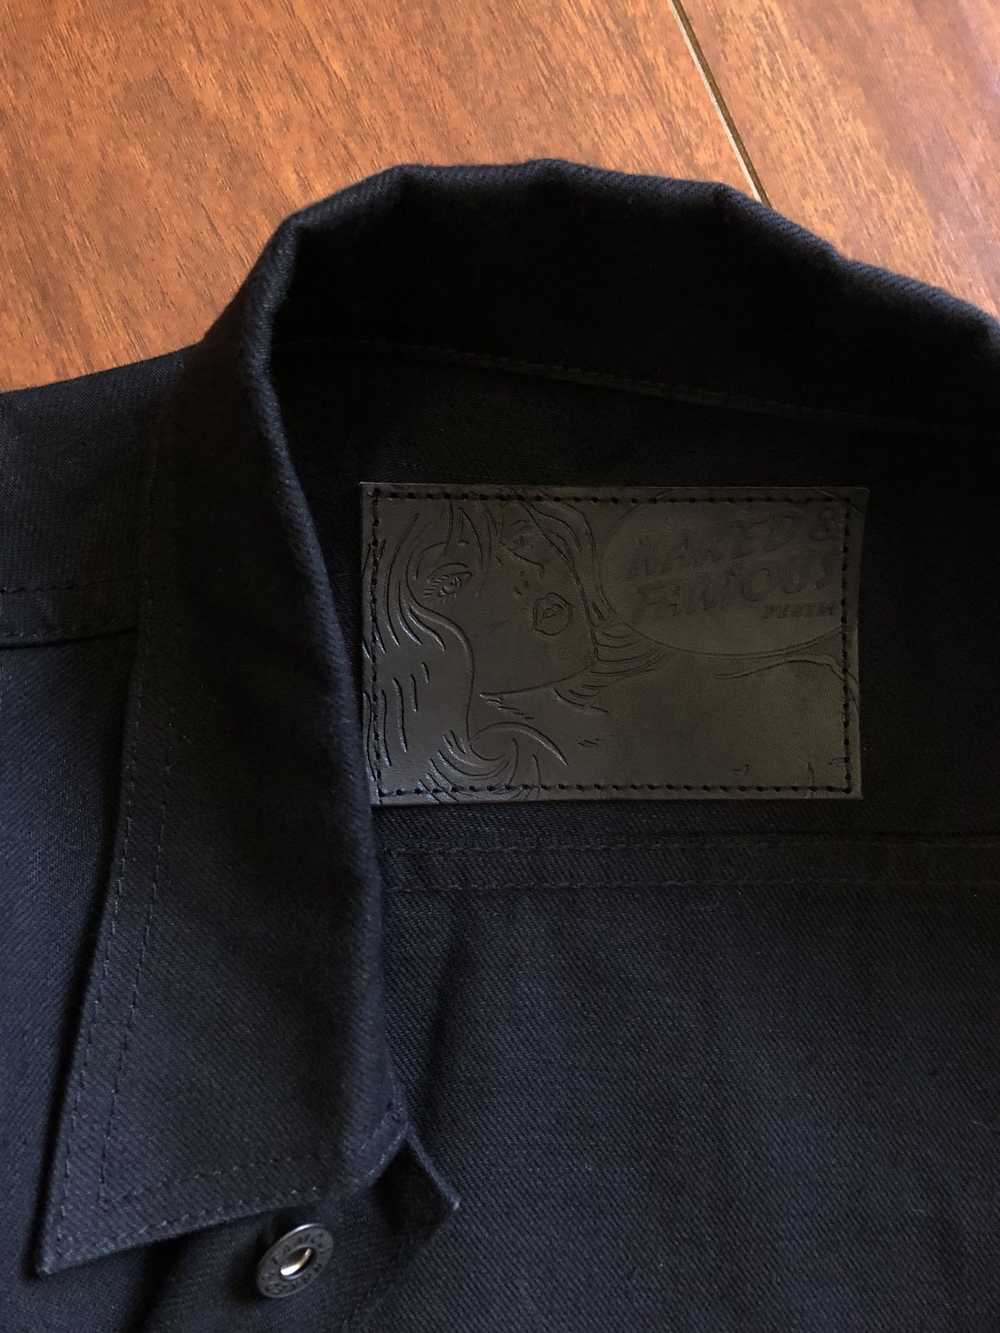 Naked & Famous Solid Black Selvedge Denim Jacket - image 5